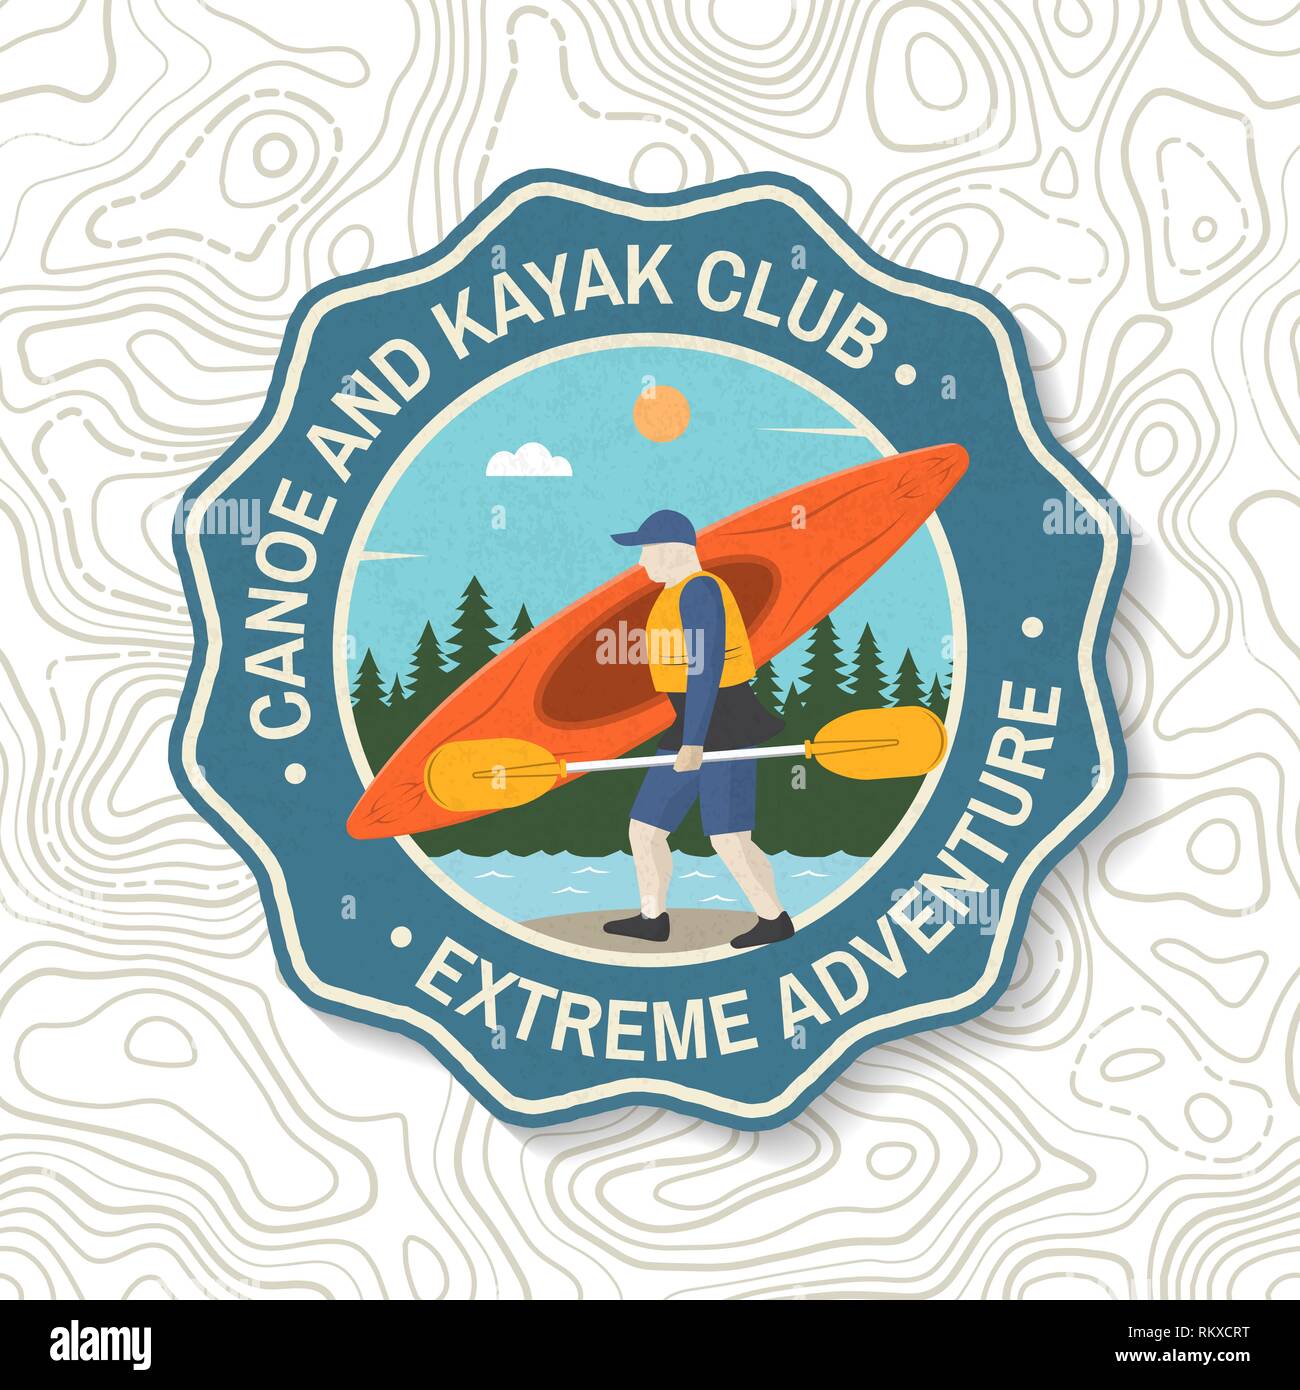 Canoa e Kayak club badge. Concetto di vettore per la camicia, patch, il timbro o il raccordo a t. Vintage design tipografia con silhouette di kayaker. Extreme sport d'acqua. Outdoor adventure emblemi, kayak patch. Illustrazione Vettoriale